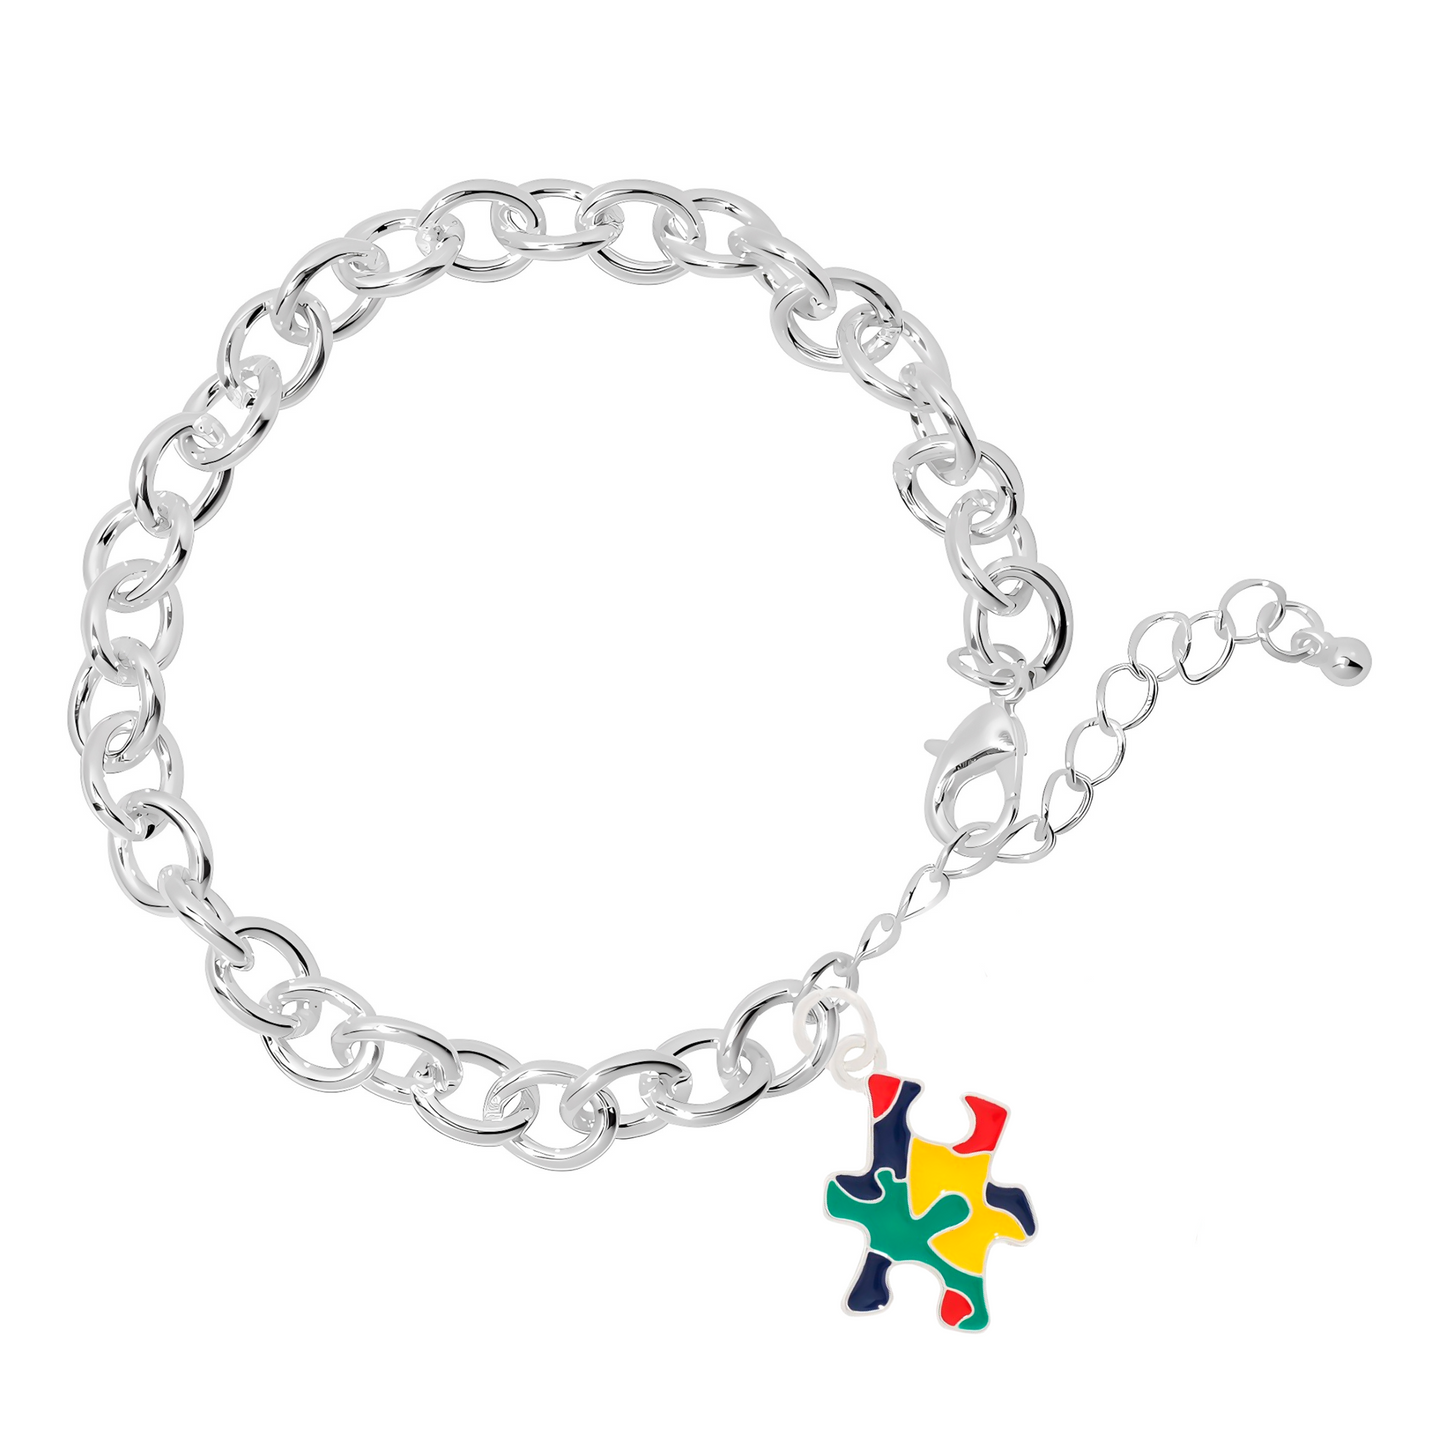 Autism Colored Puzzle Piece Chunky Charm Bracelets